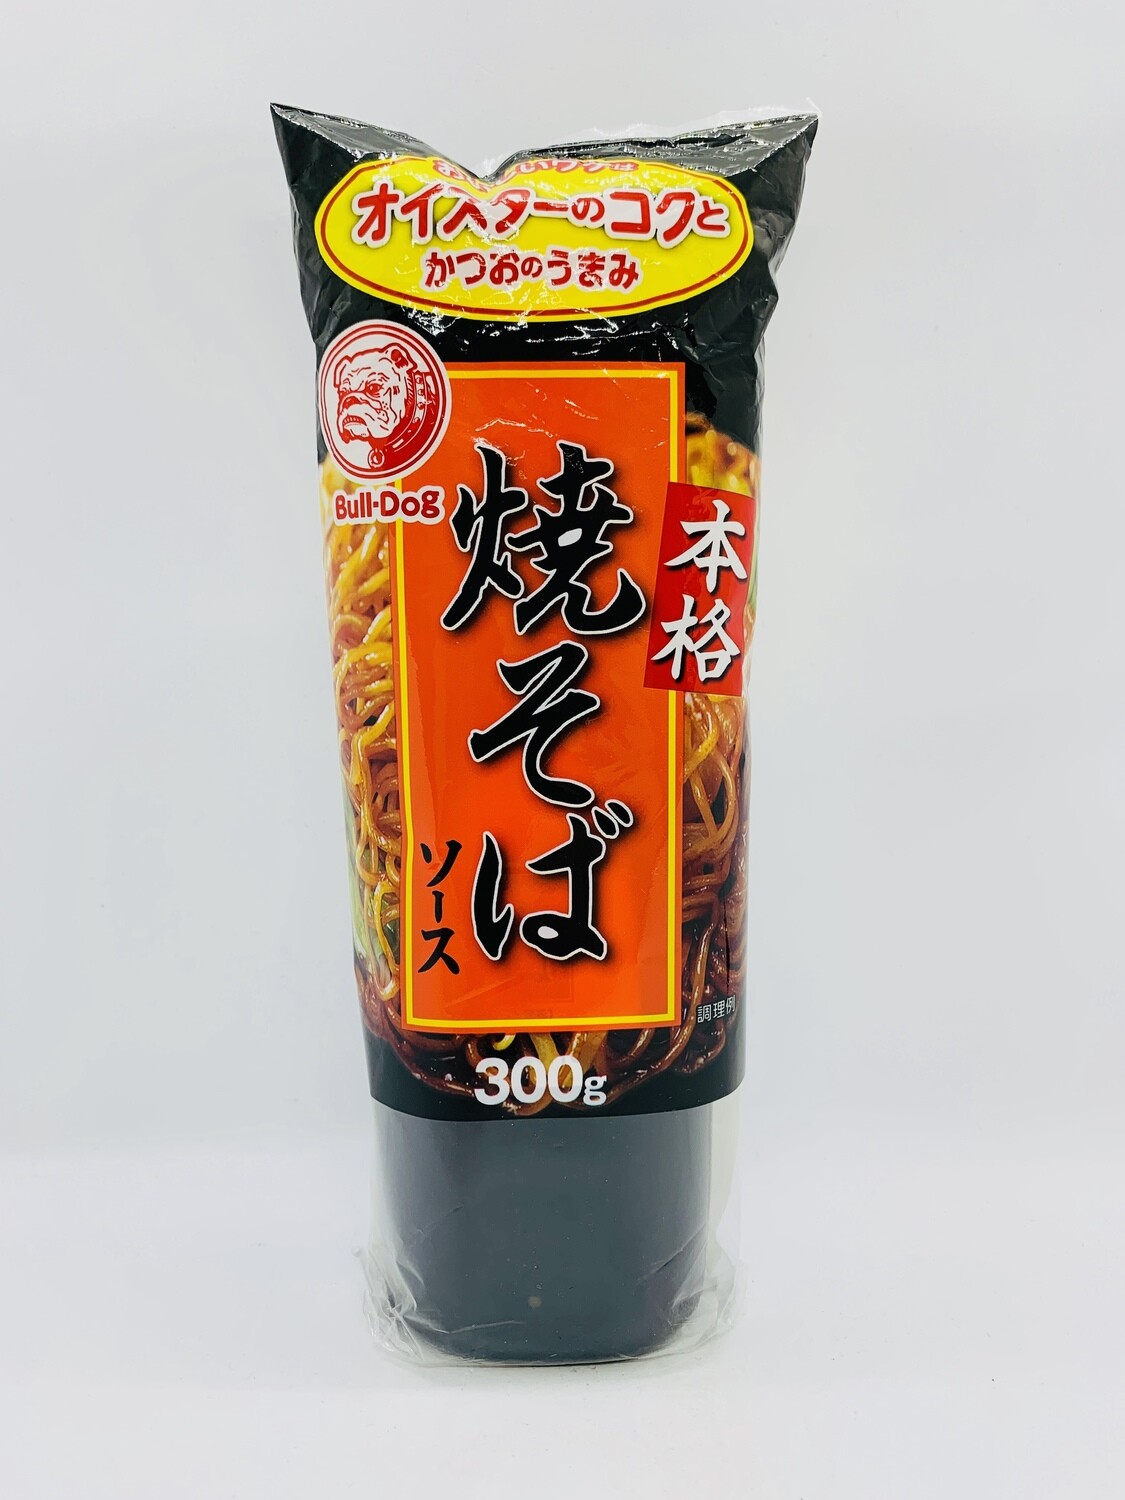 BULL-DOG Yakisoba Sauce 300g